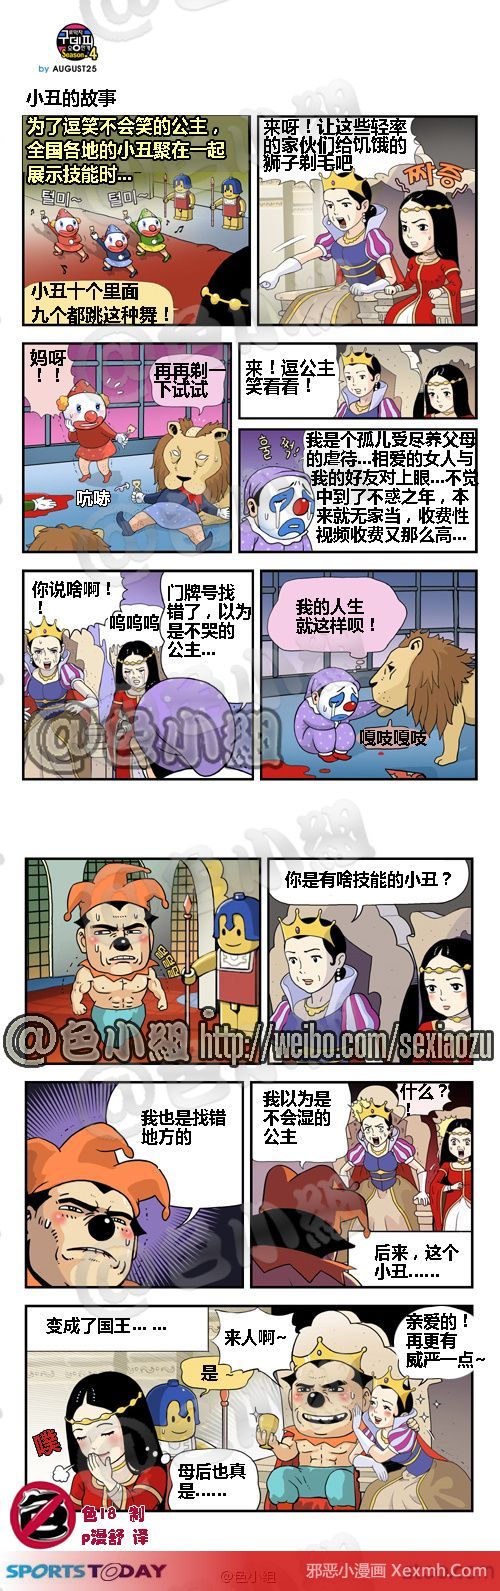 成人韩国小漫画